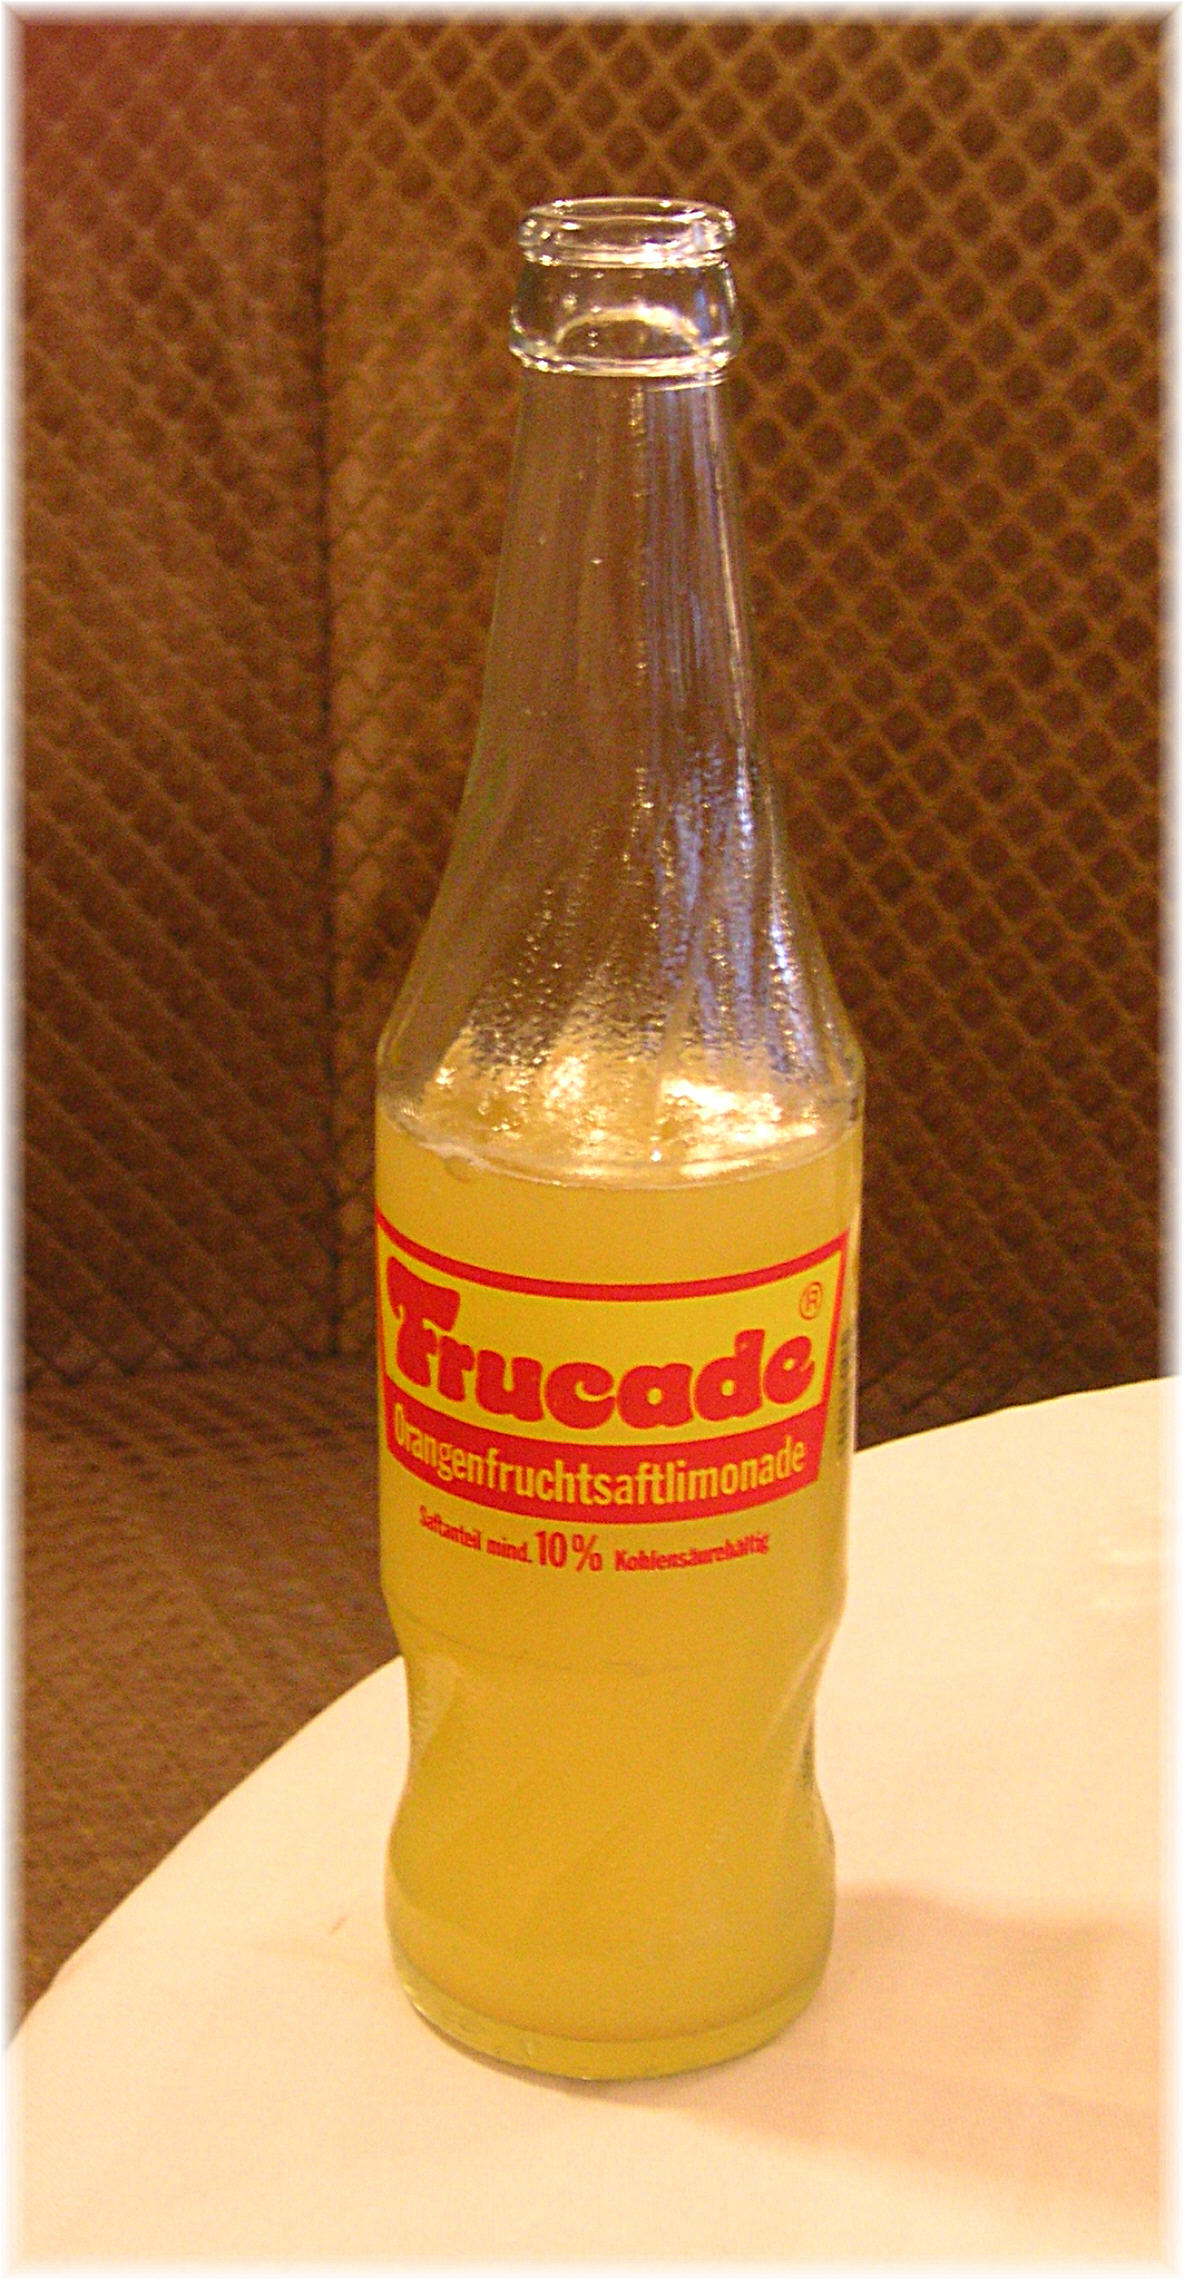 https://upload.wikimedia.org/wikipedia/commons/f/f6/Frucade_glass_bottle.JPG